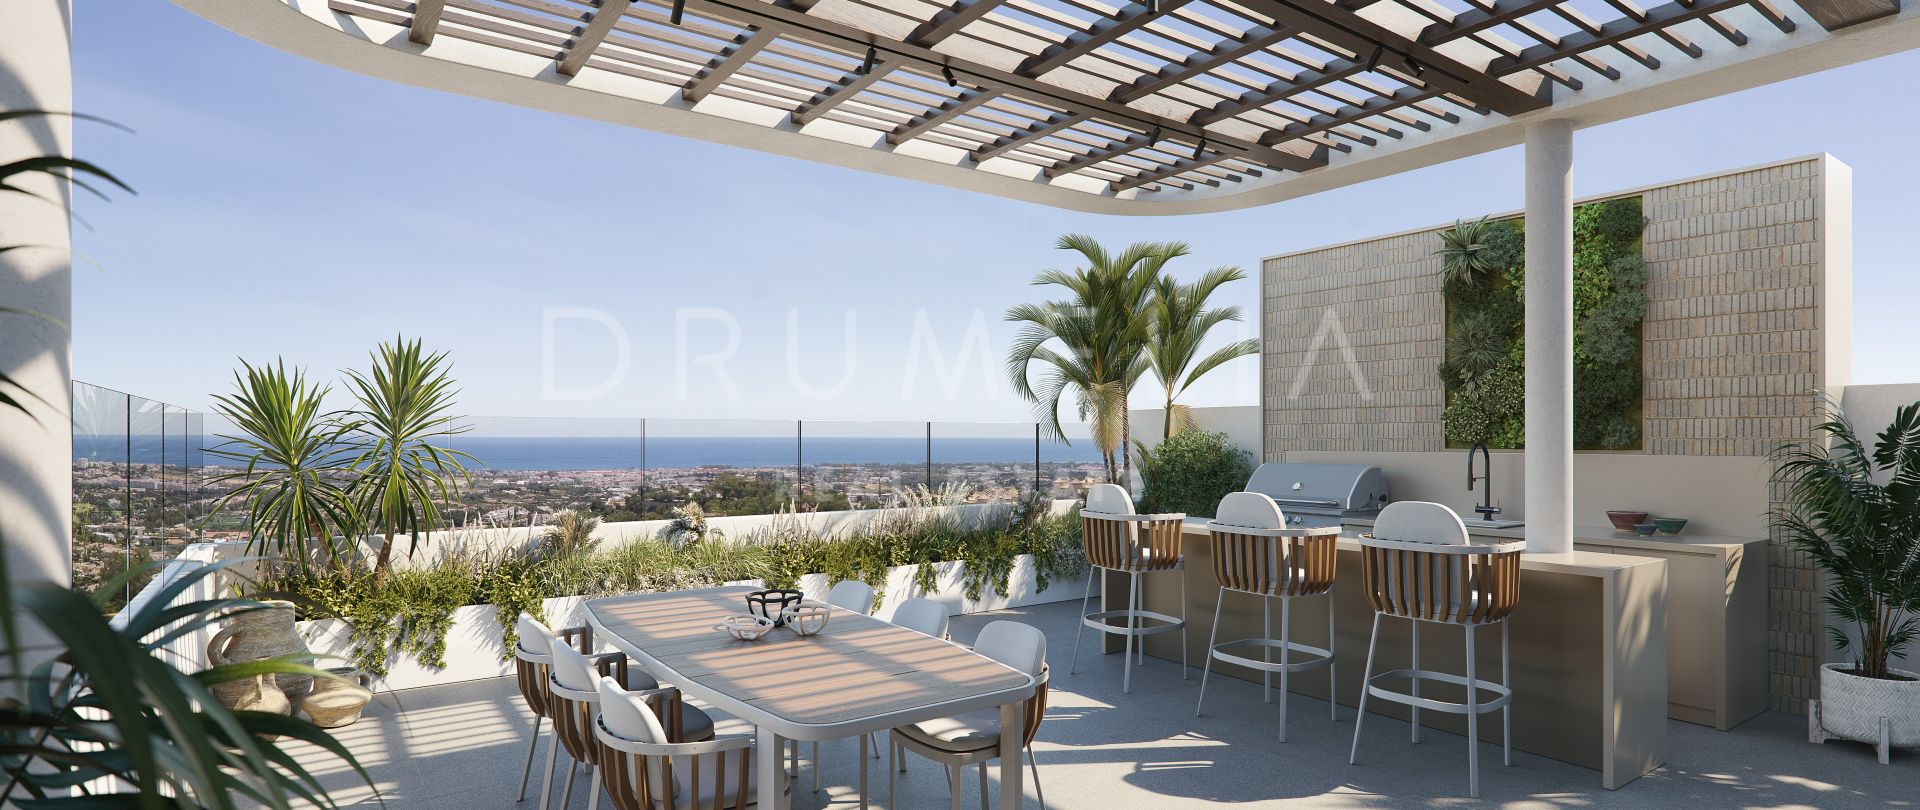 Modernes Luxus-Penthouse mit unglaublichem Panoramablick im Stadtteil Benahavís